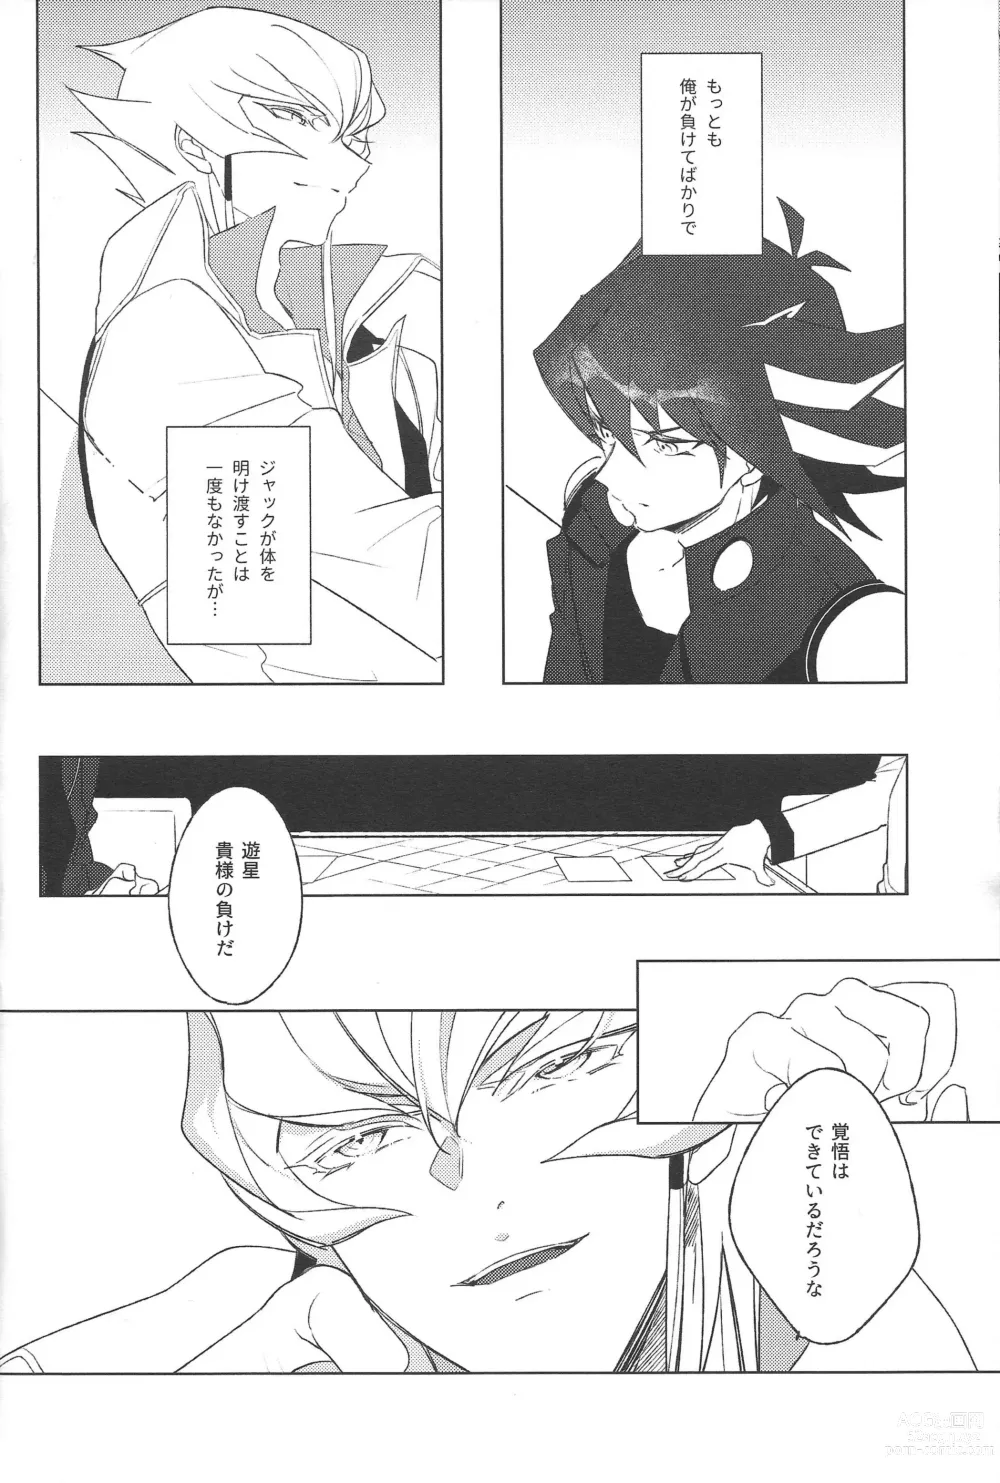 Page 5 of doujinshi Akenai Yoru no Sugoshikata